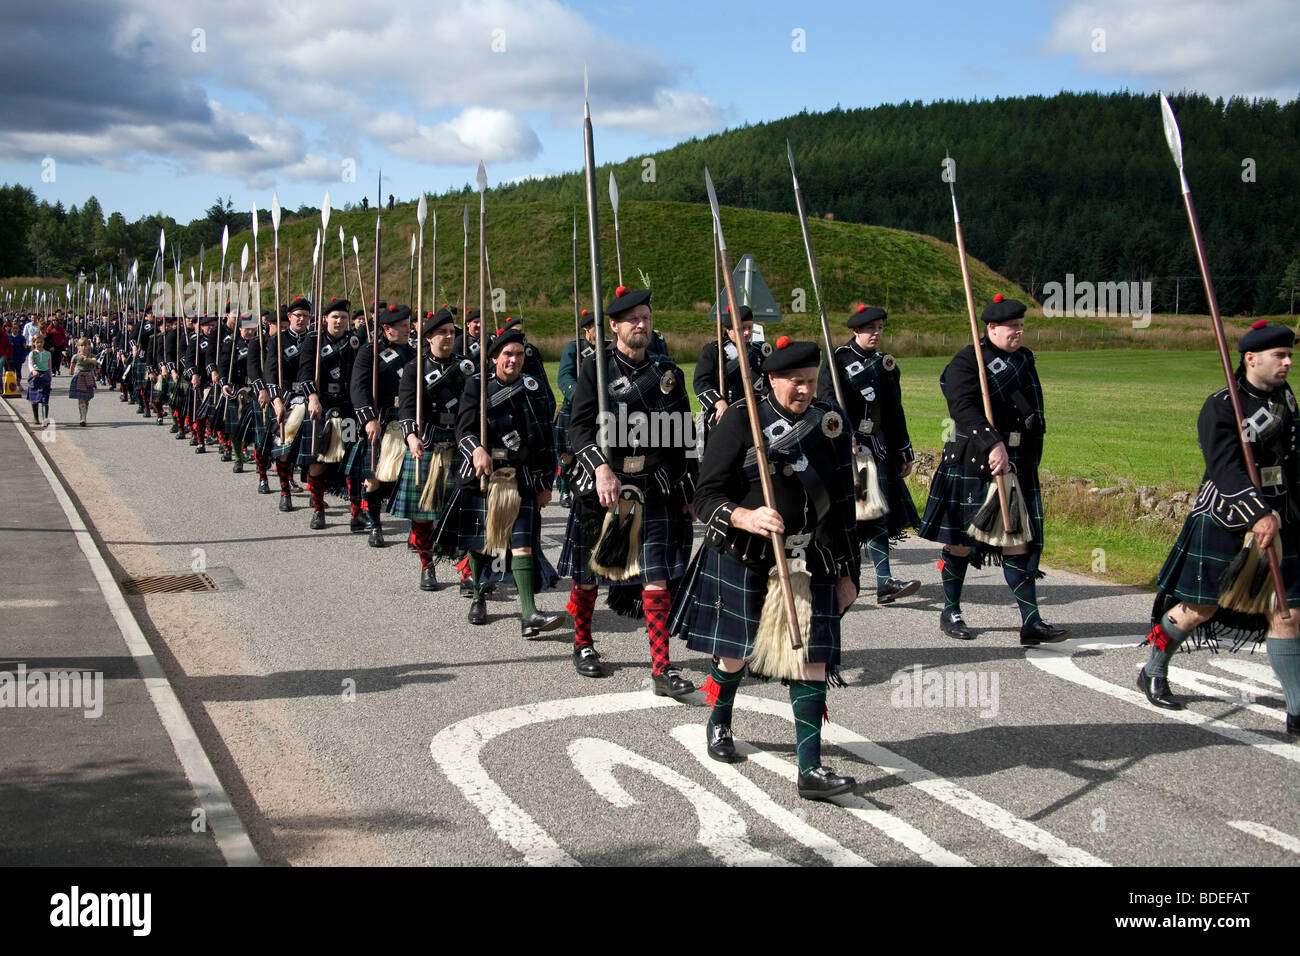 Highlanders écossais Lonach de mars les clansmen unique autour de la région de Donside, Ecosse UK Banque D'Images